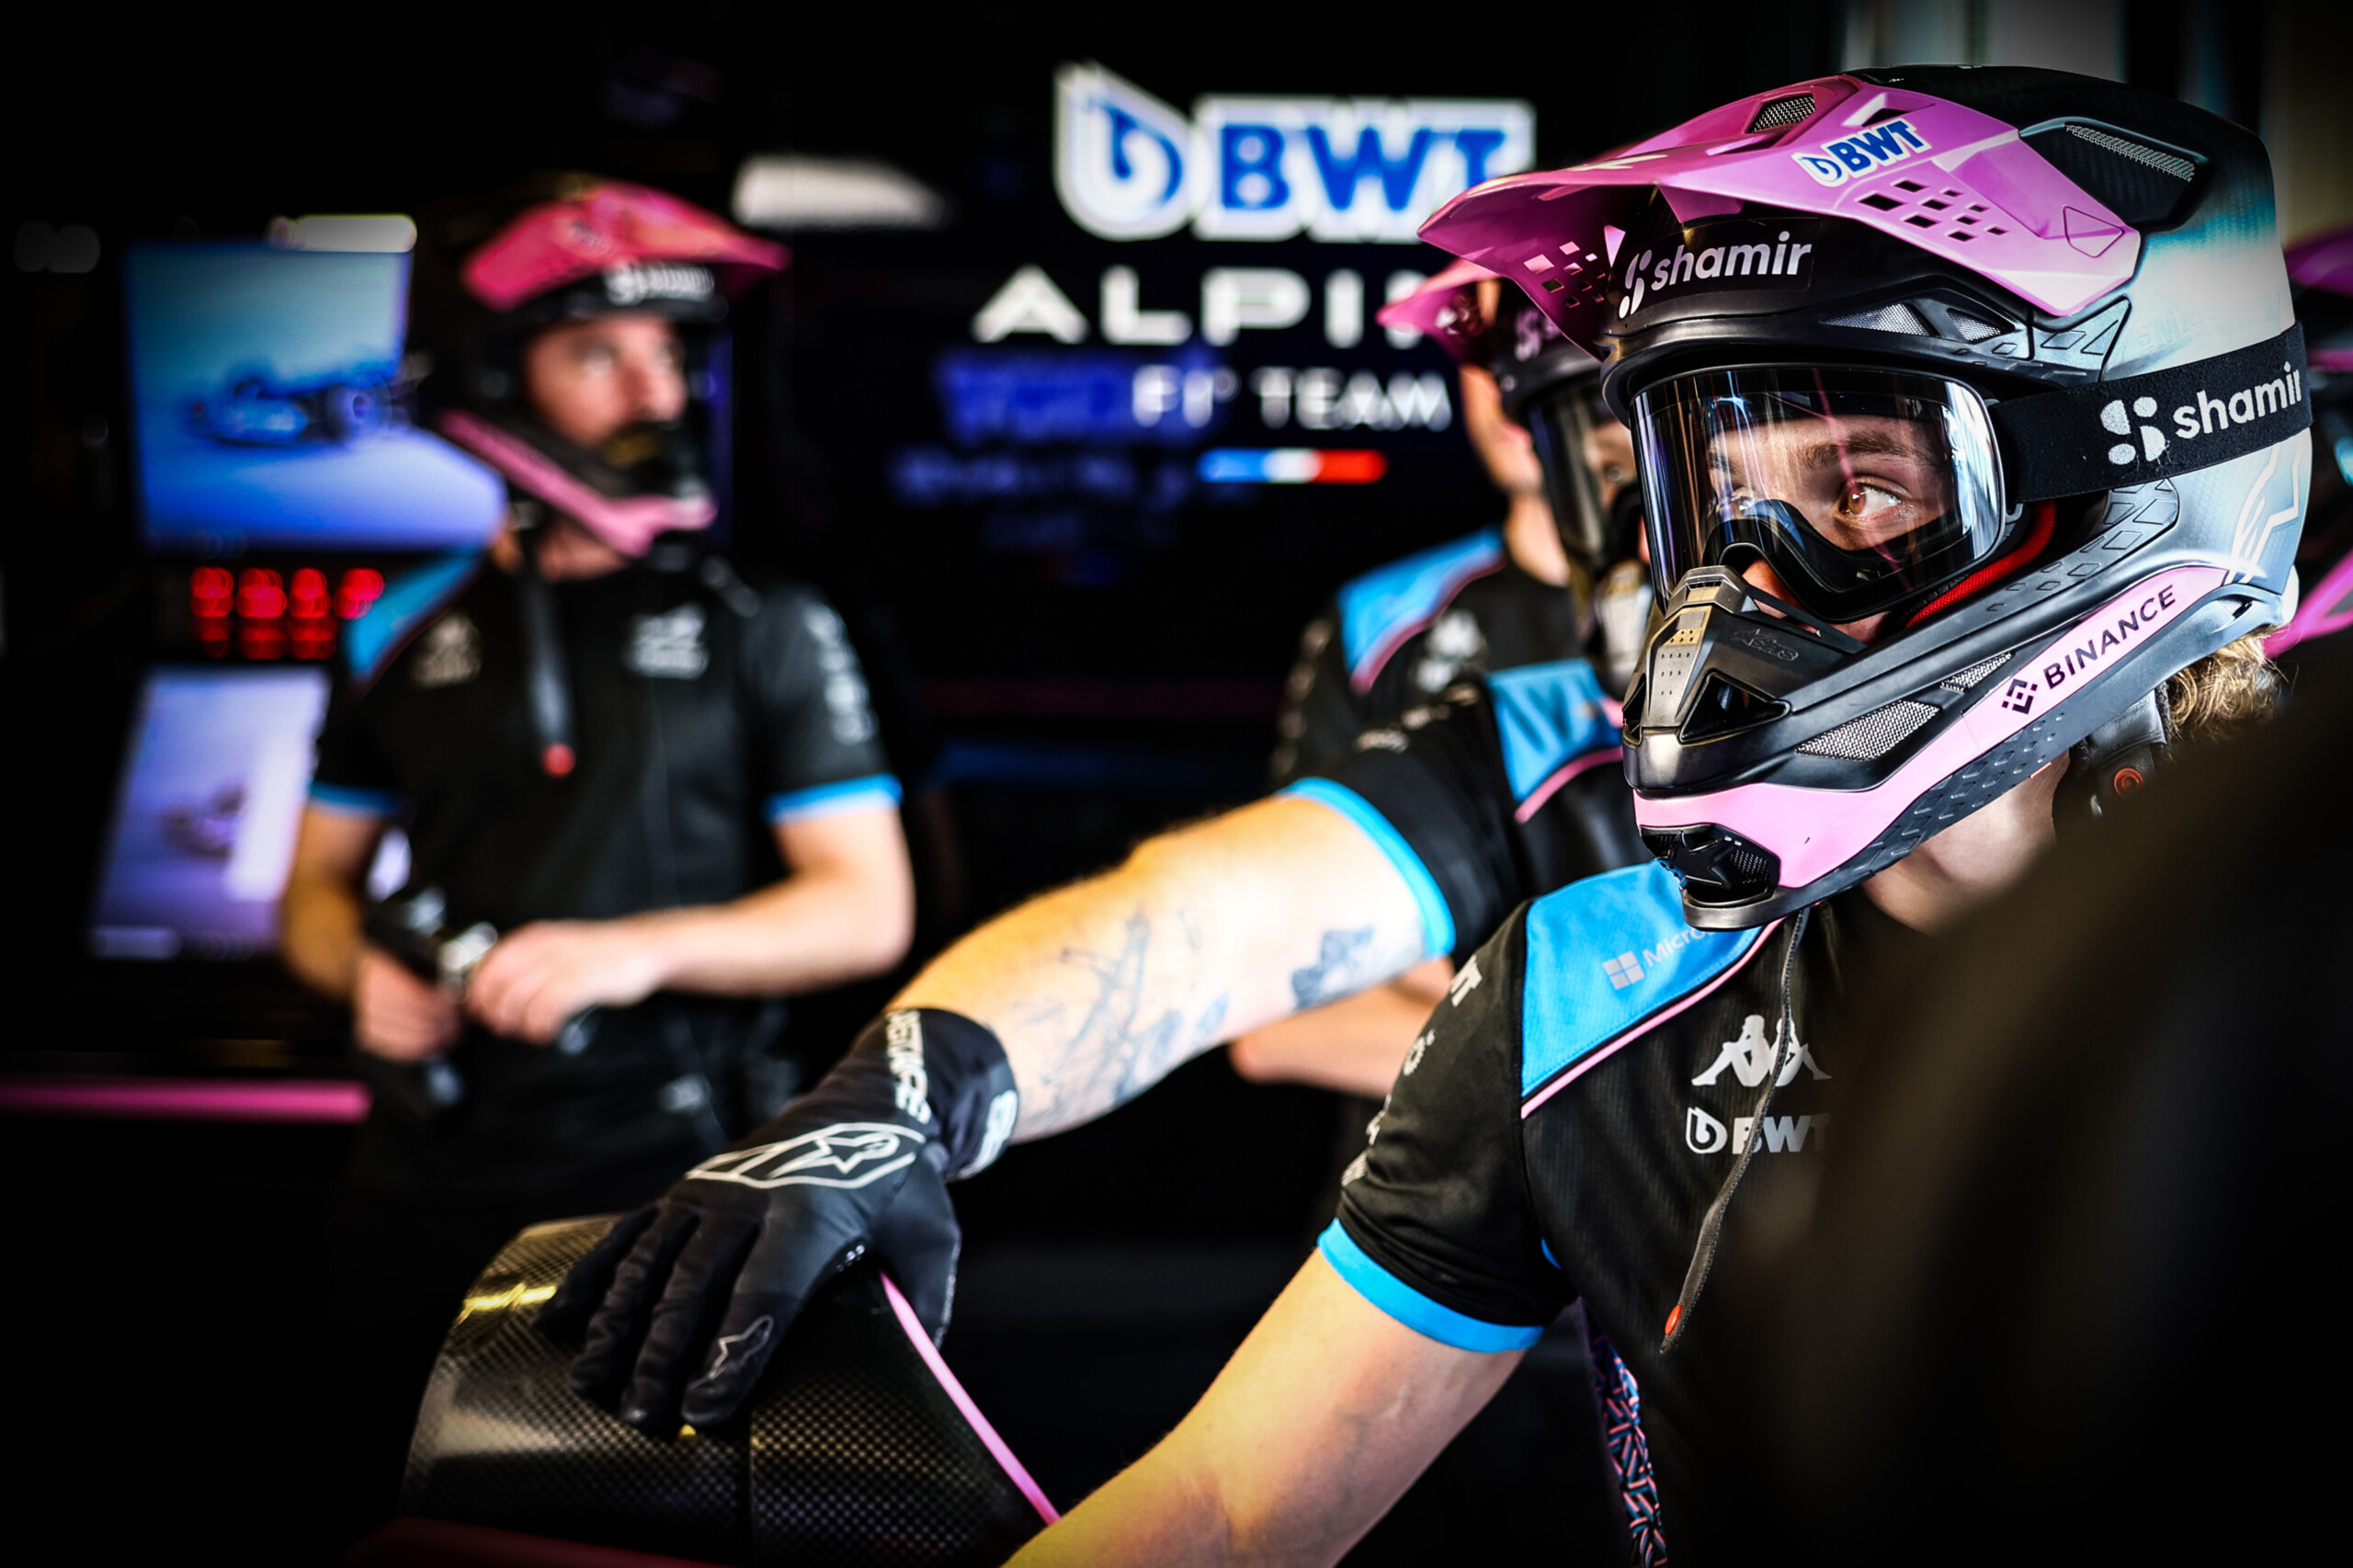 Shamir renueva su exitosa asociación con BWT Alpine F1 Team